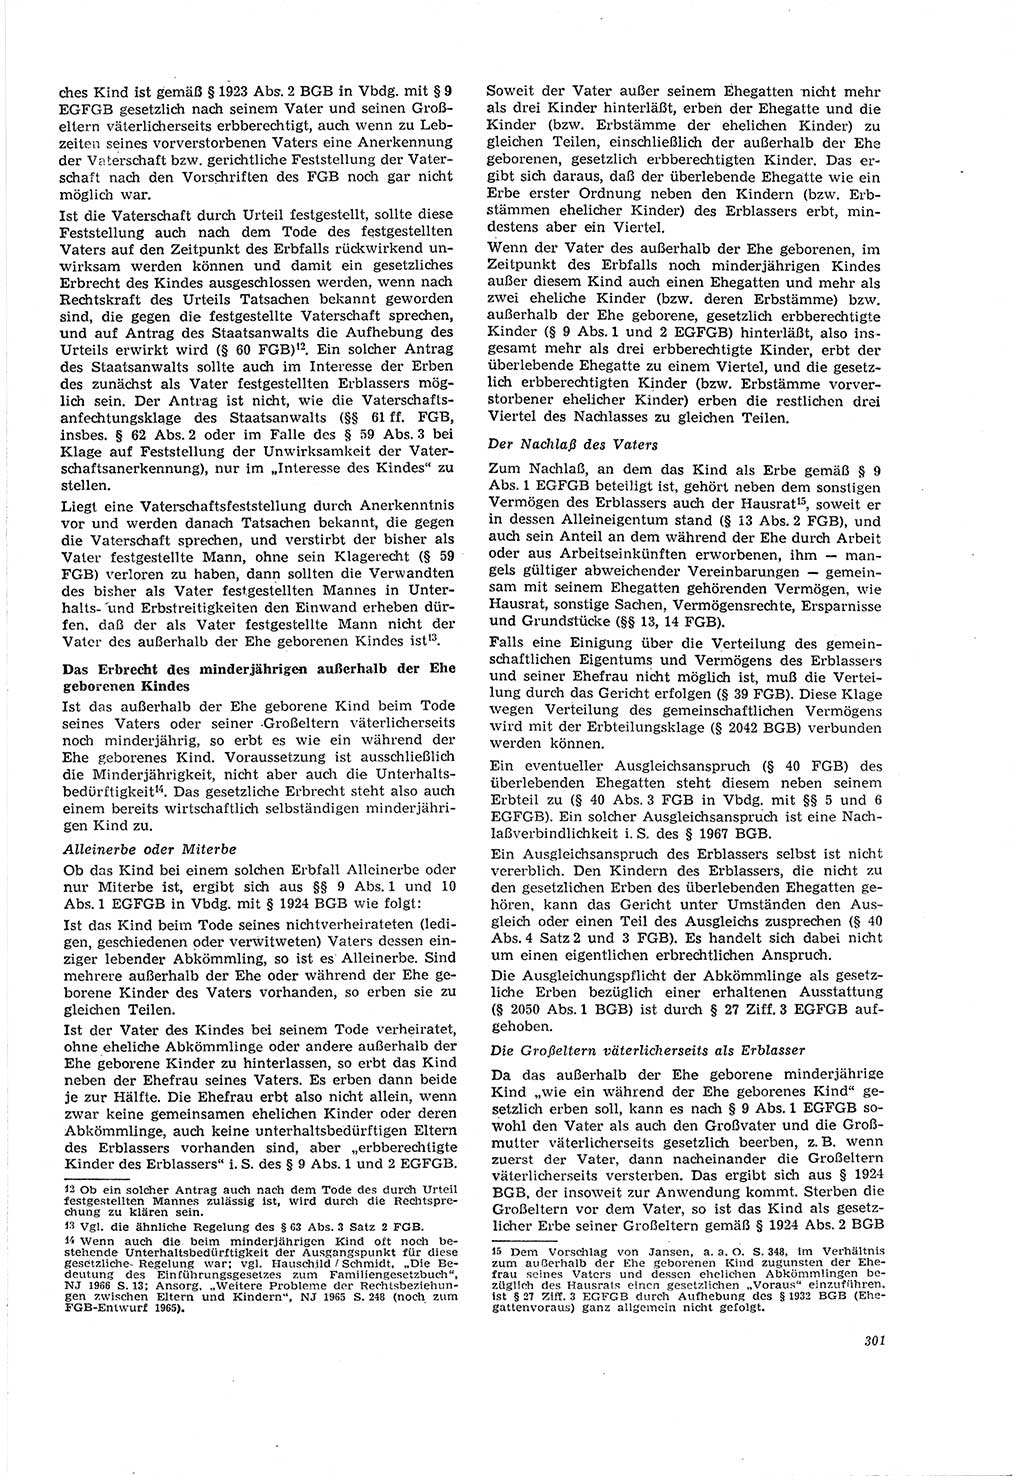 Neue Justiz (NJ), Zeitschrift für Recht und Rechtswissenschaft [Deutsche Demokratische Republik (DDR)], 20. Jahrgang 1966, Seite 301 (NJ DDR 1966, S. 301)